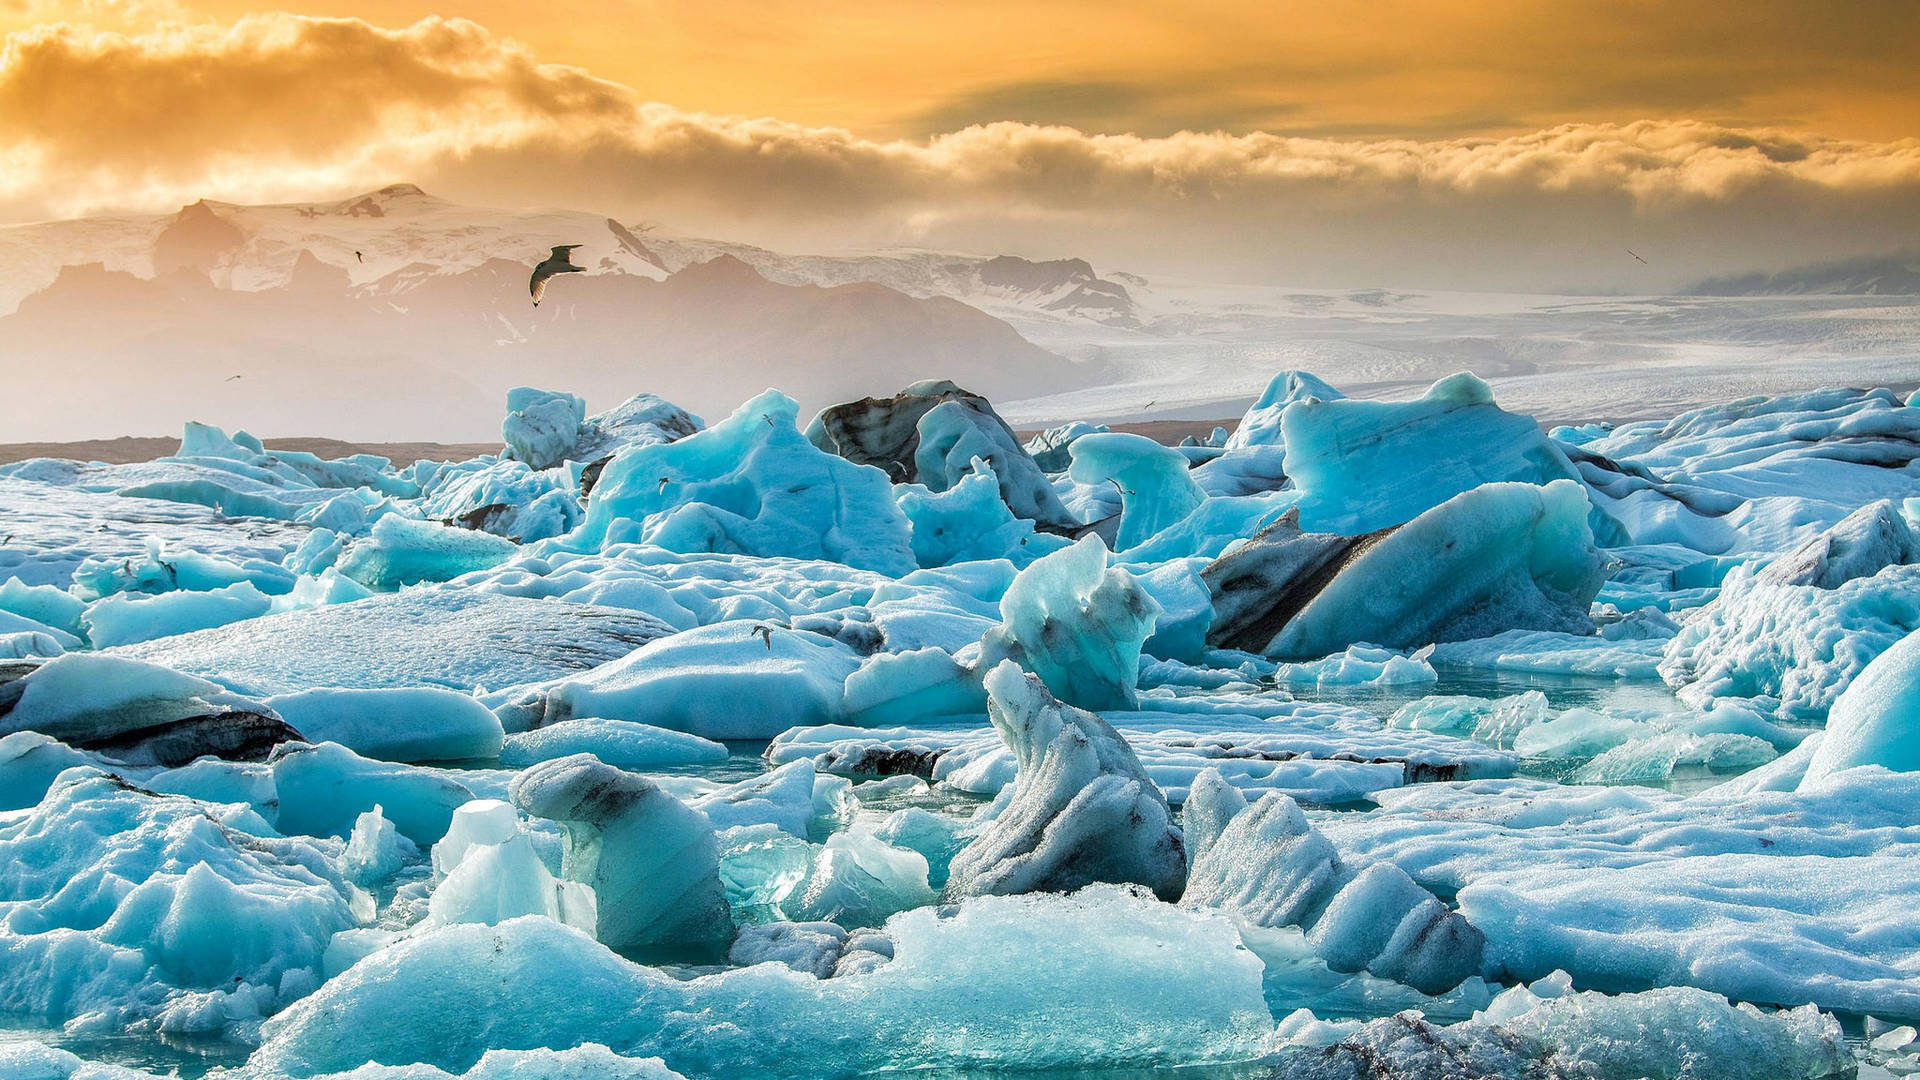 Arctic Landscape Full Of Ice